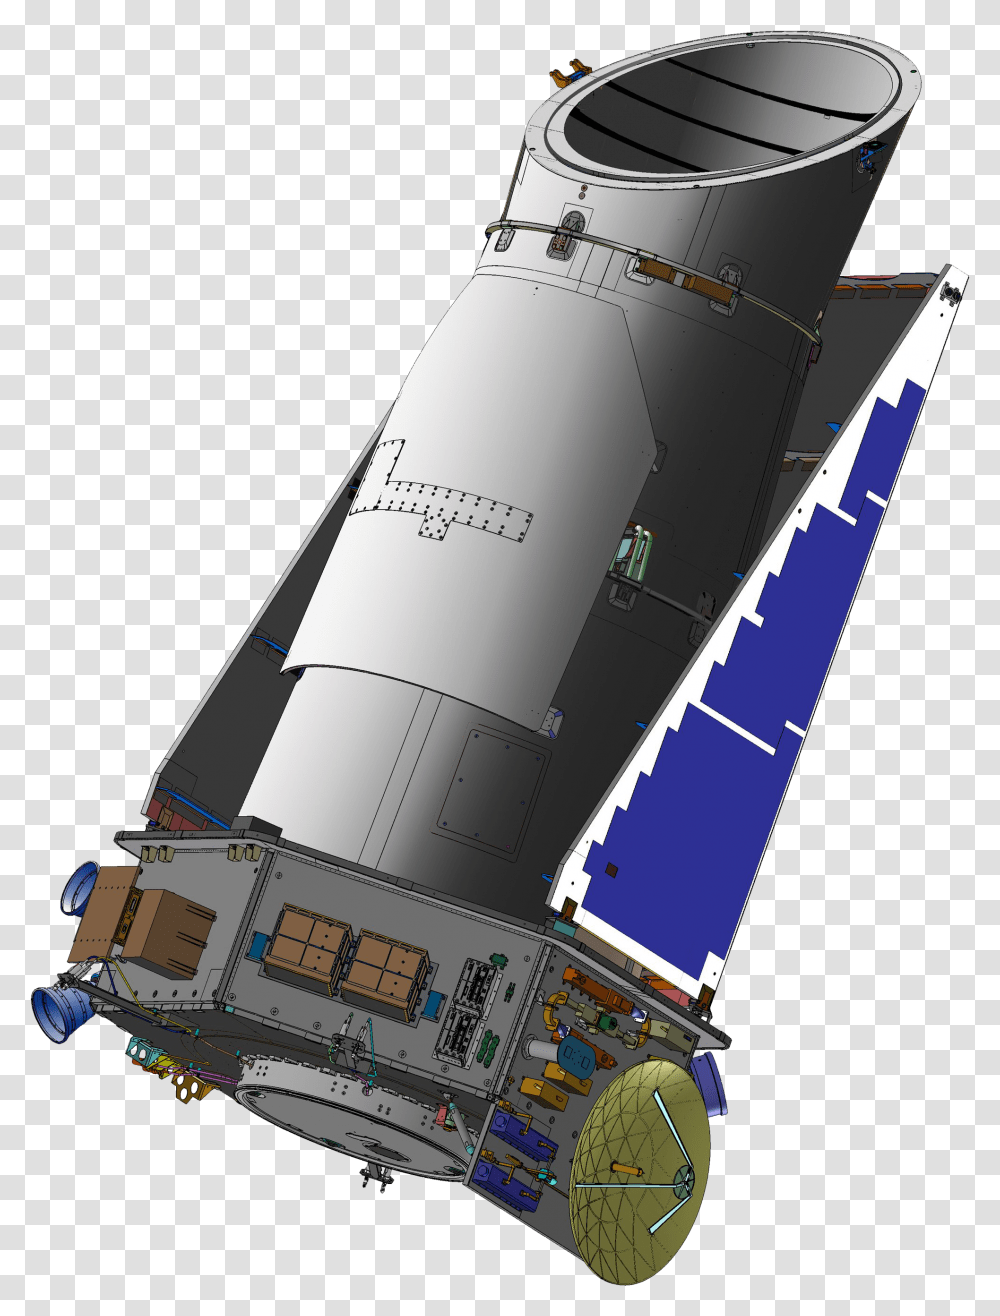 Kepler Space Telescope Diagram, Vehicle, Transportation, Missile, Rocket Transparent Png